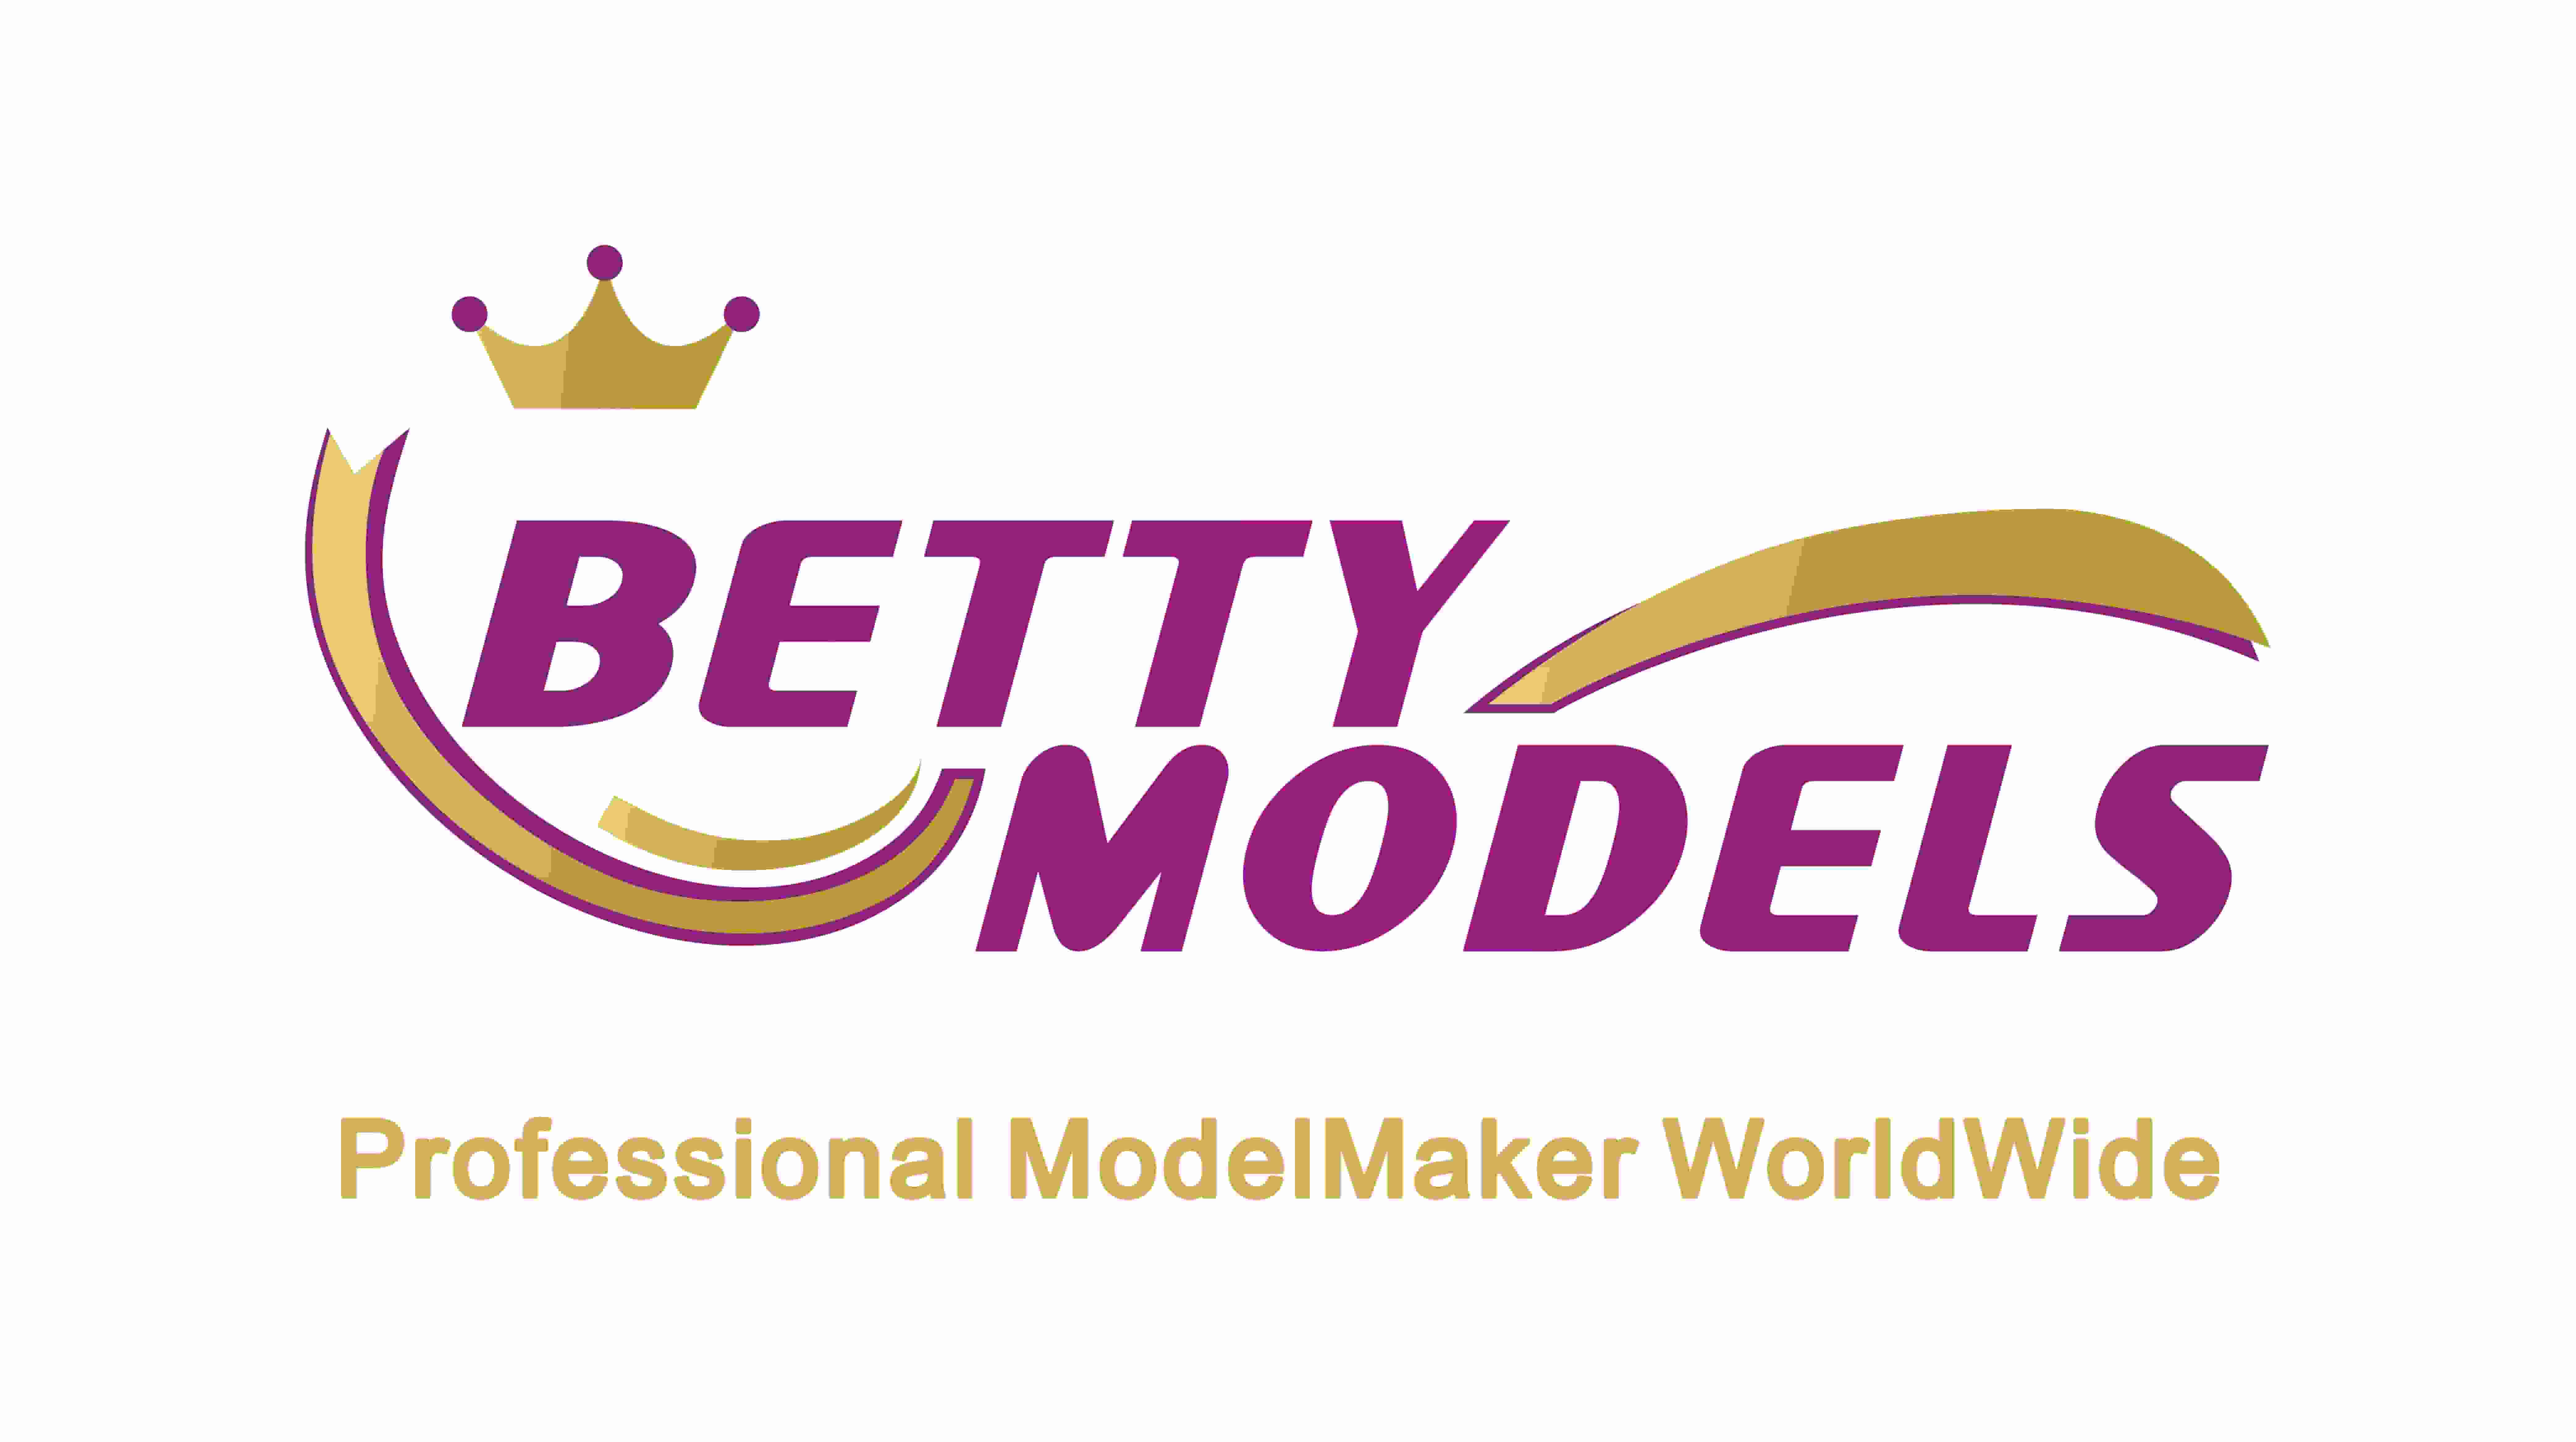 Betty Models-logo verandert in nieuw logo